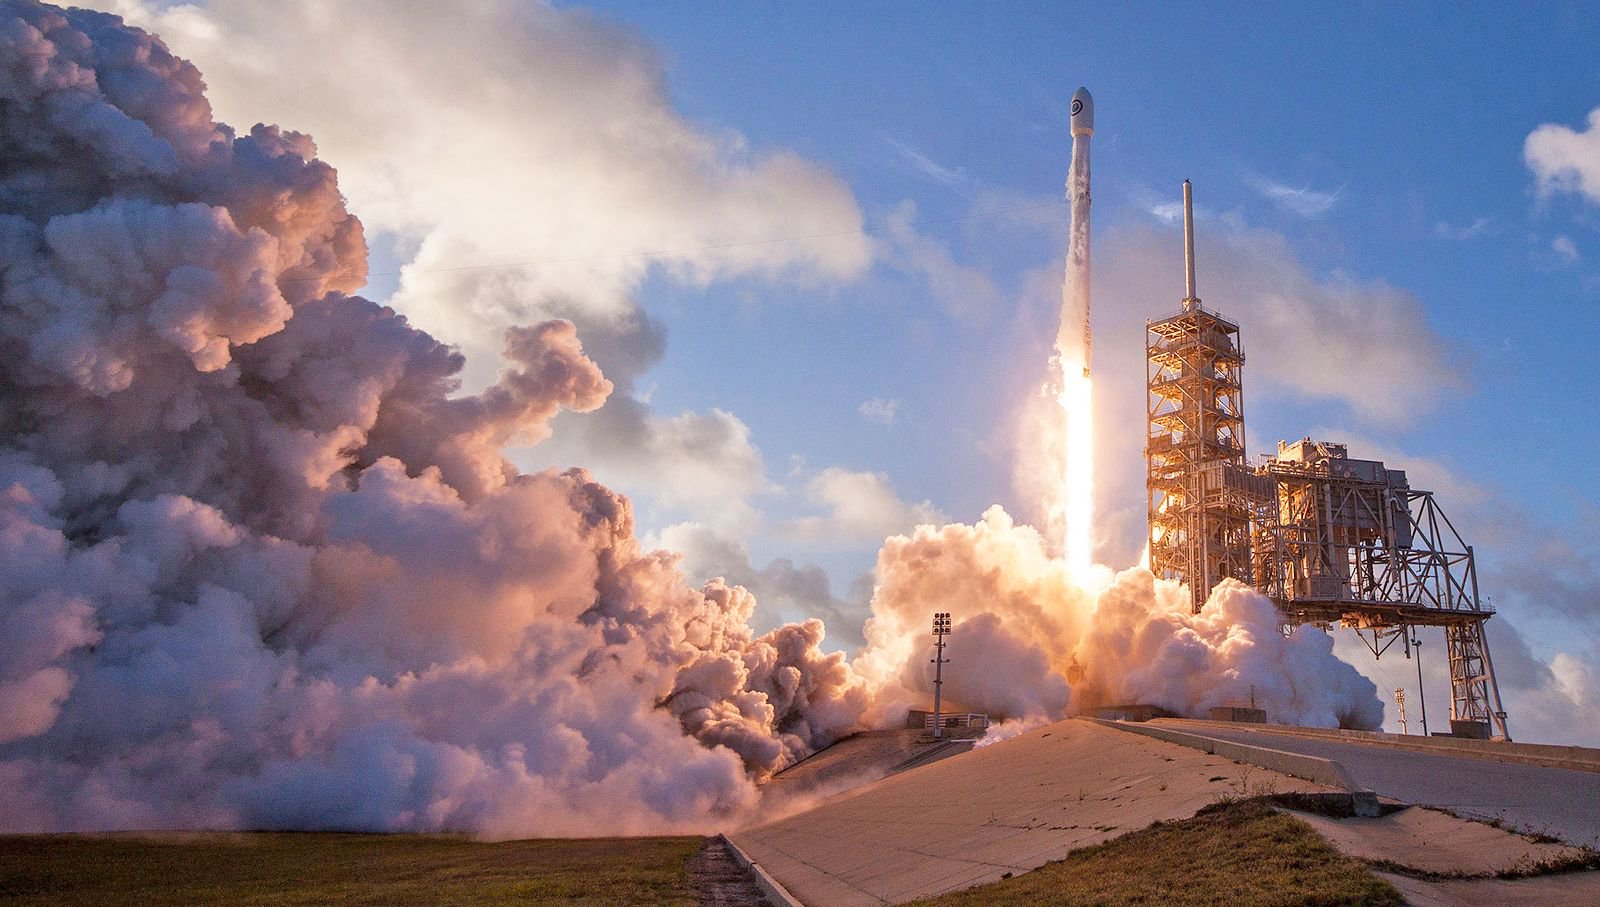 En el fin de semana SpaceX mostrará en órbita dos satélites de comunicaciones